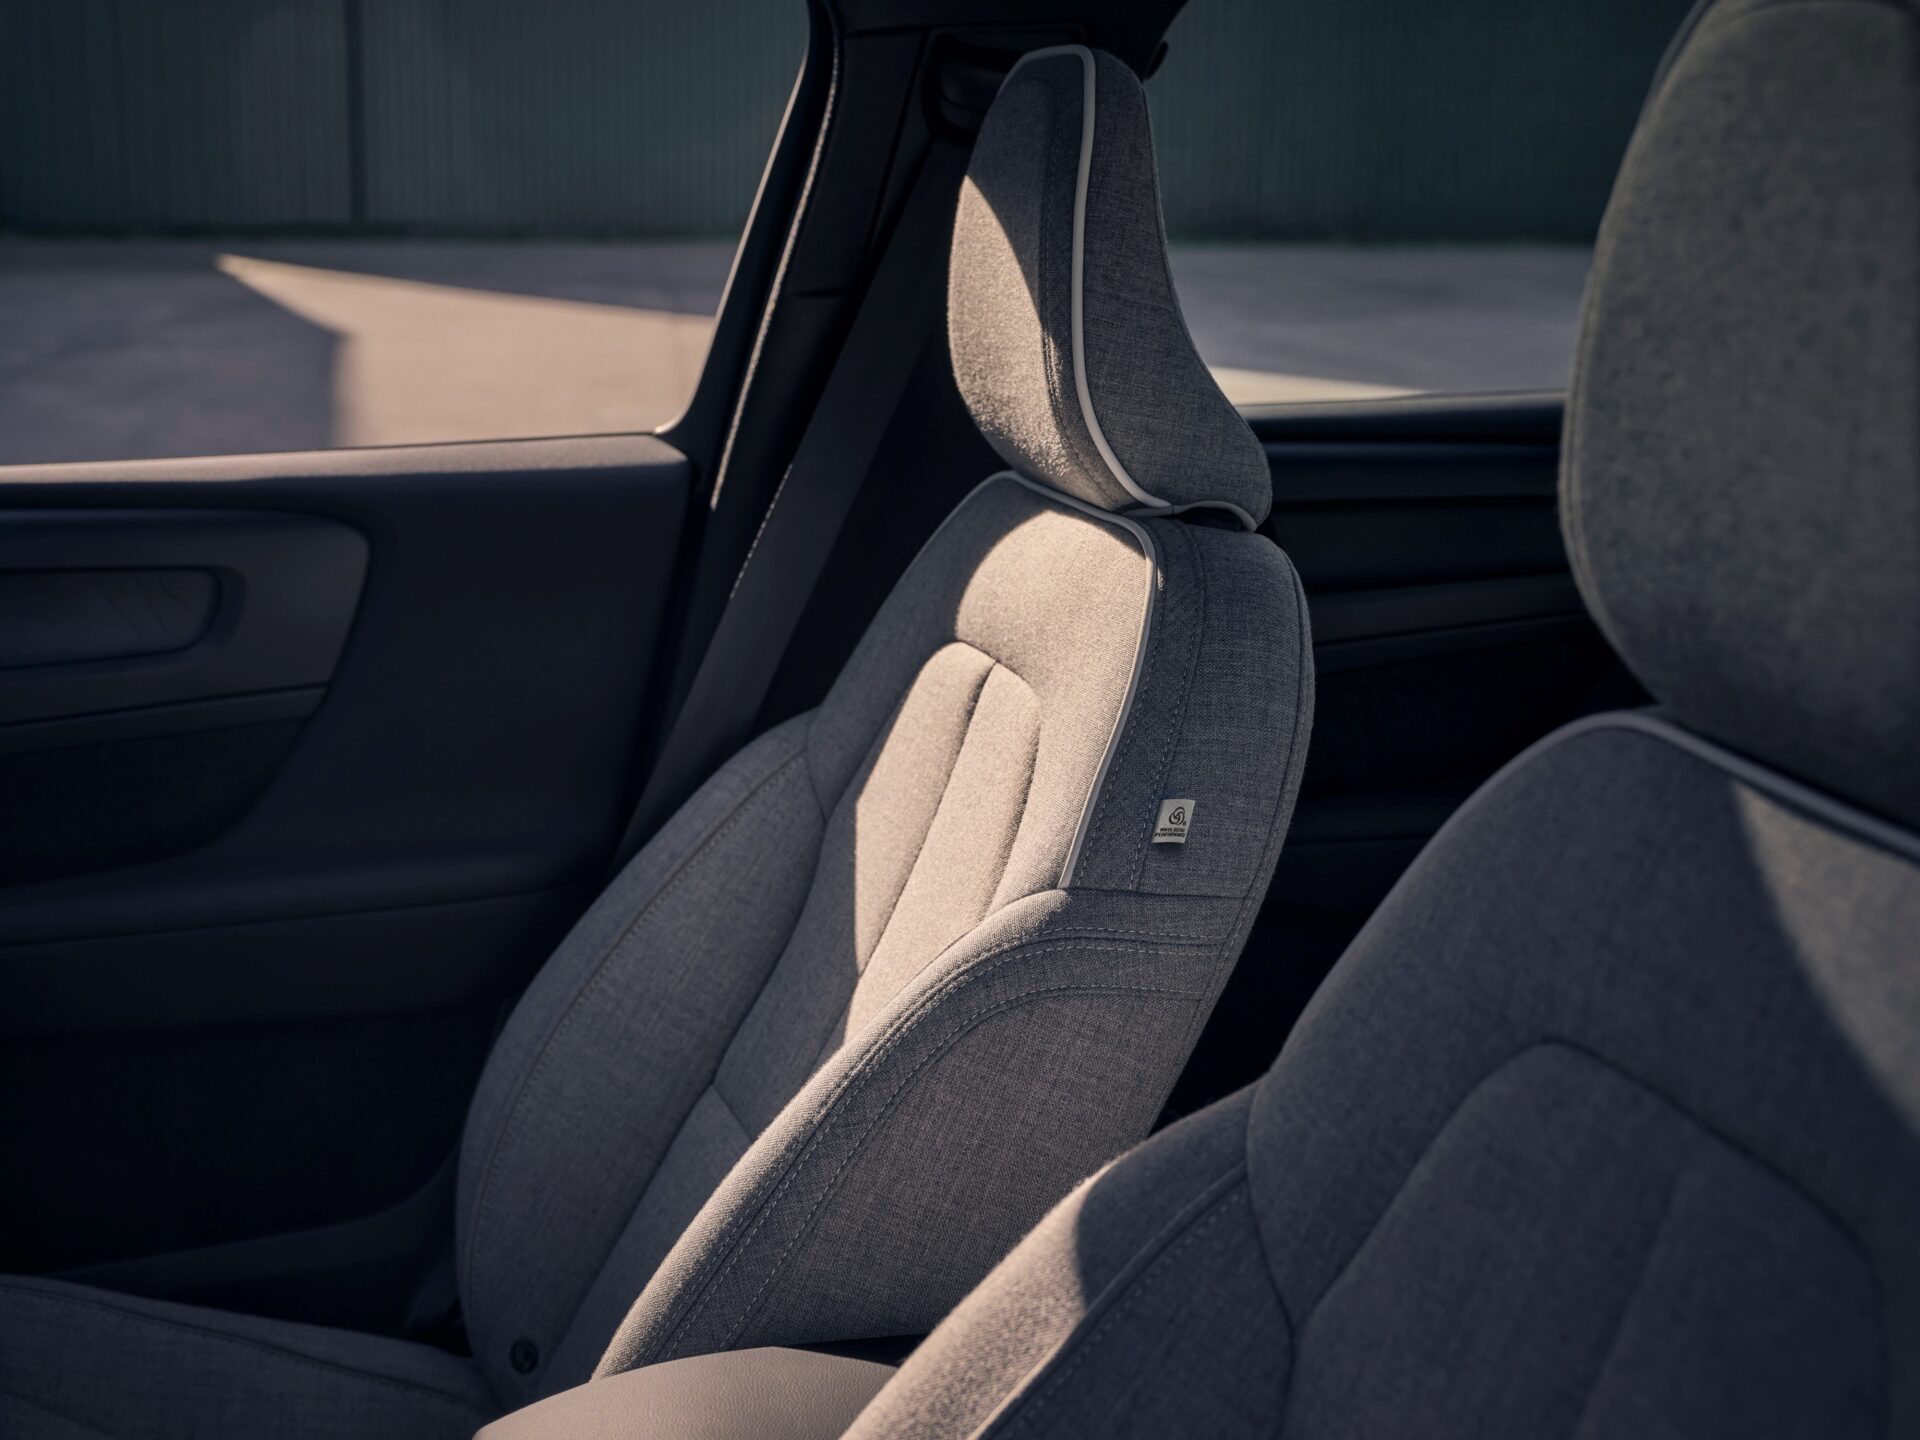 Le design intérieur de la Volvo XC40 Recharge est à la fois minimaliste et sophistiqué, avec des matériaux durables et des finitions haut de gamme